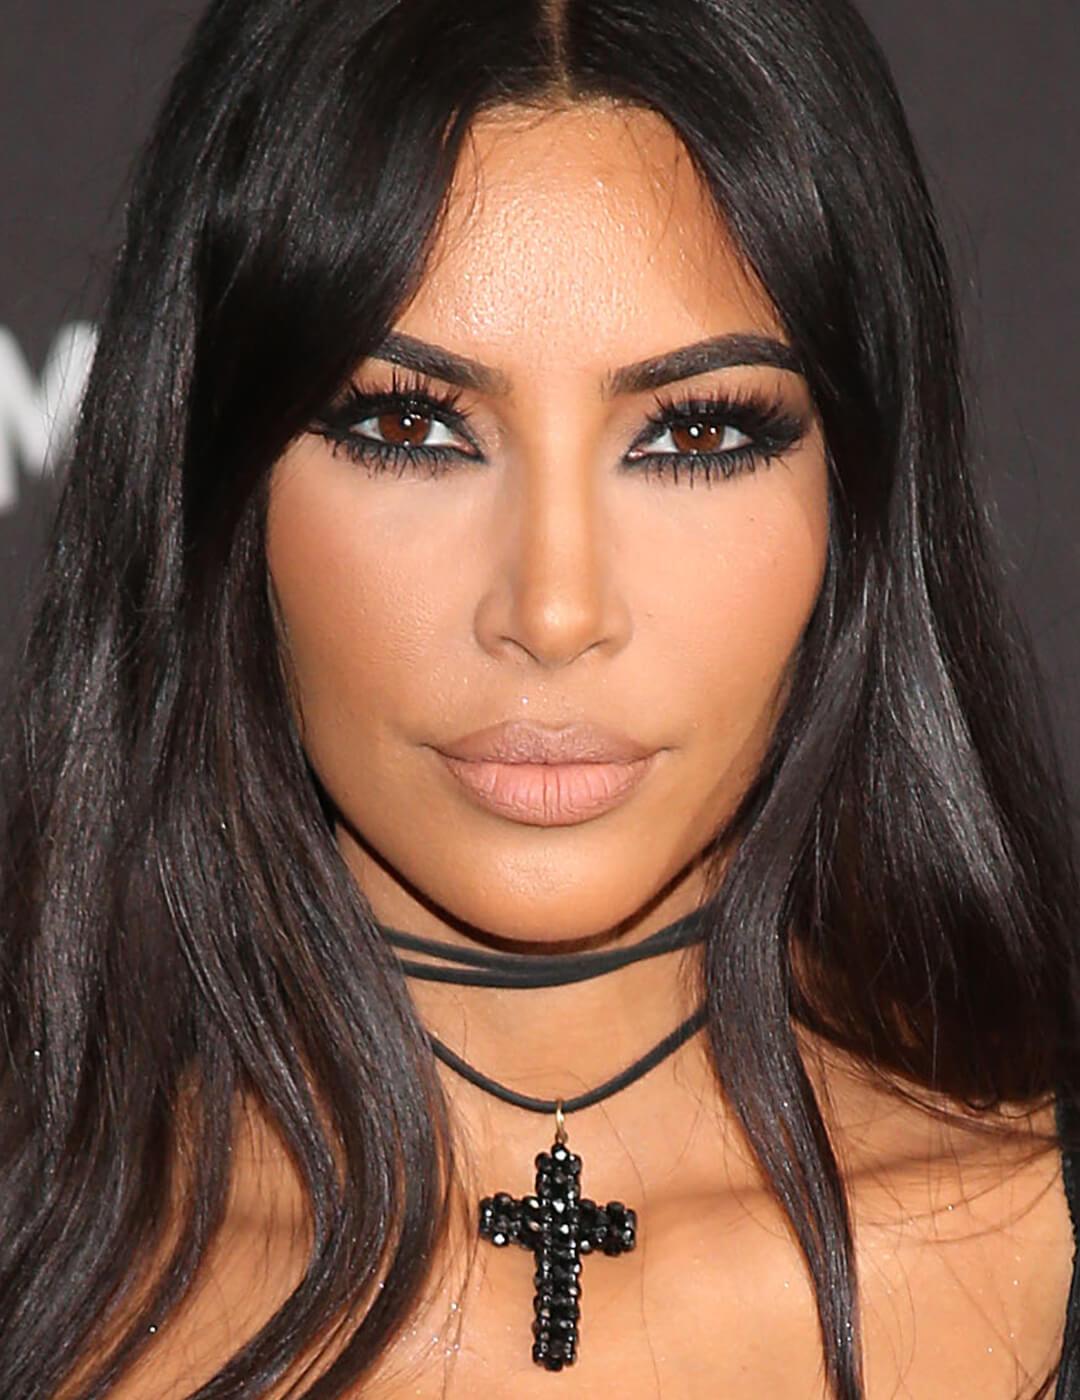 Kim Kardashian looking edgy in a dark eye makeup look